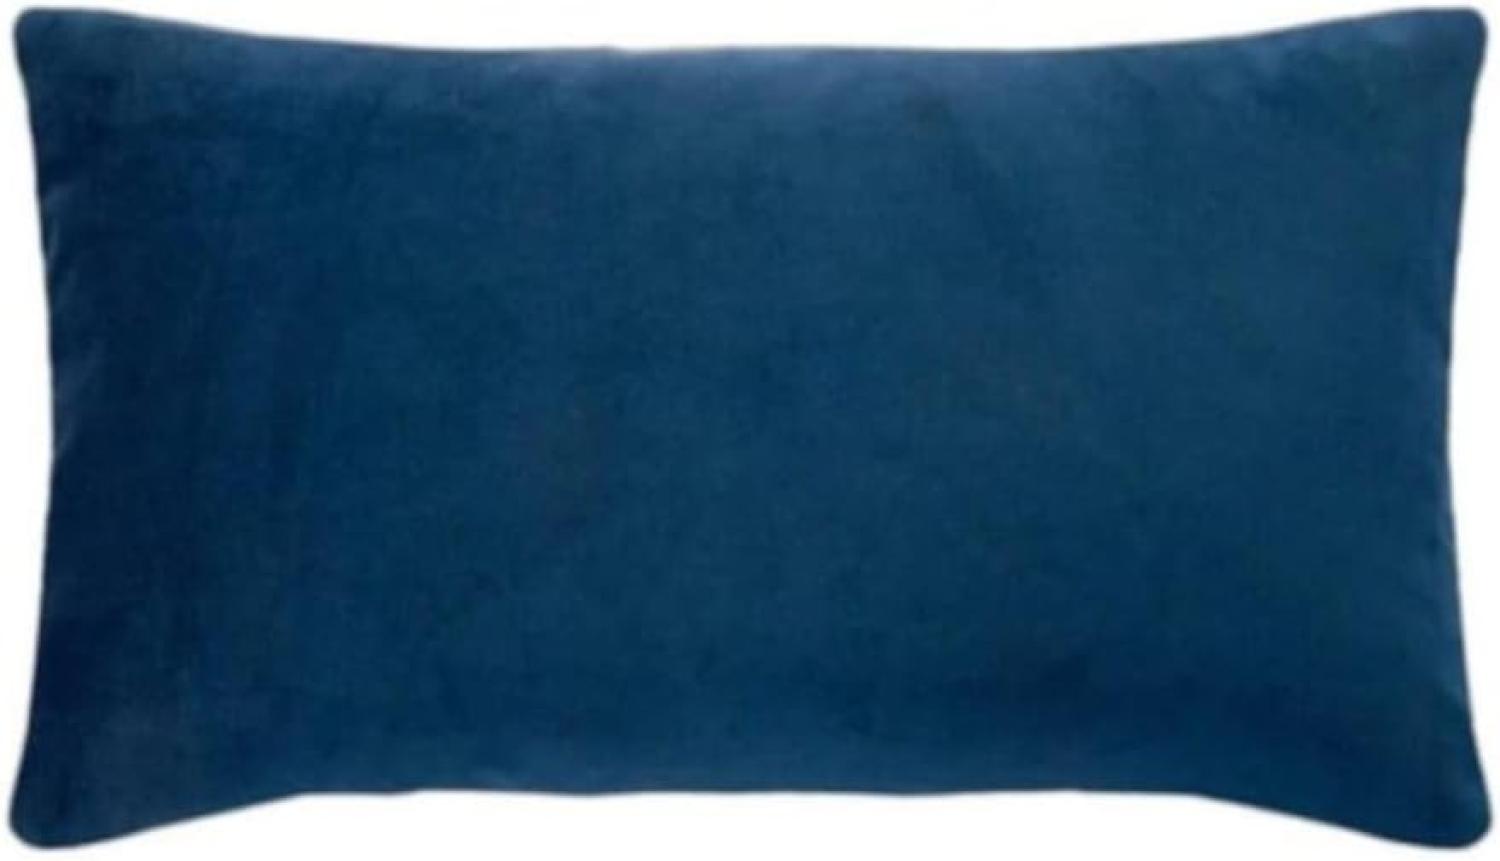 pad Kissenhülle Samt Elegance Marine Blau (25x50cm) 10127-K80-2550 Bild 1